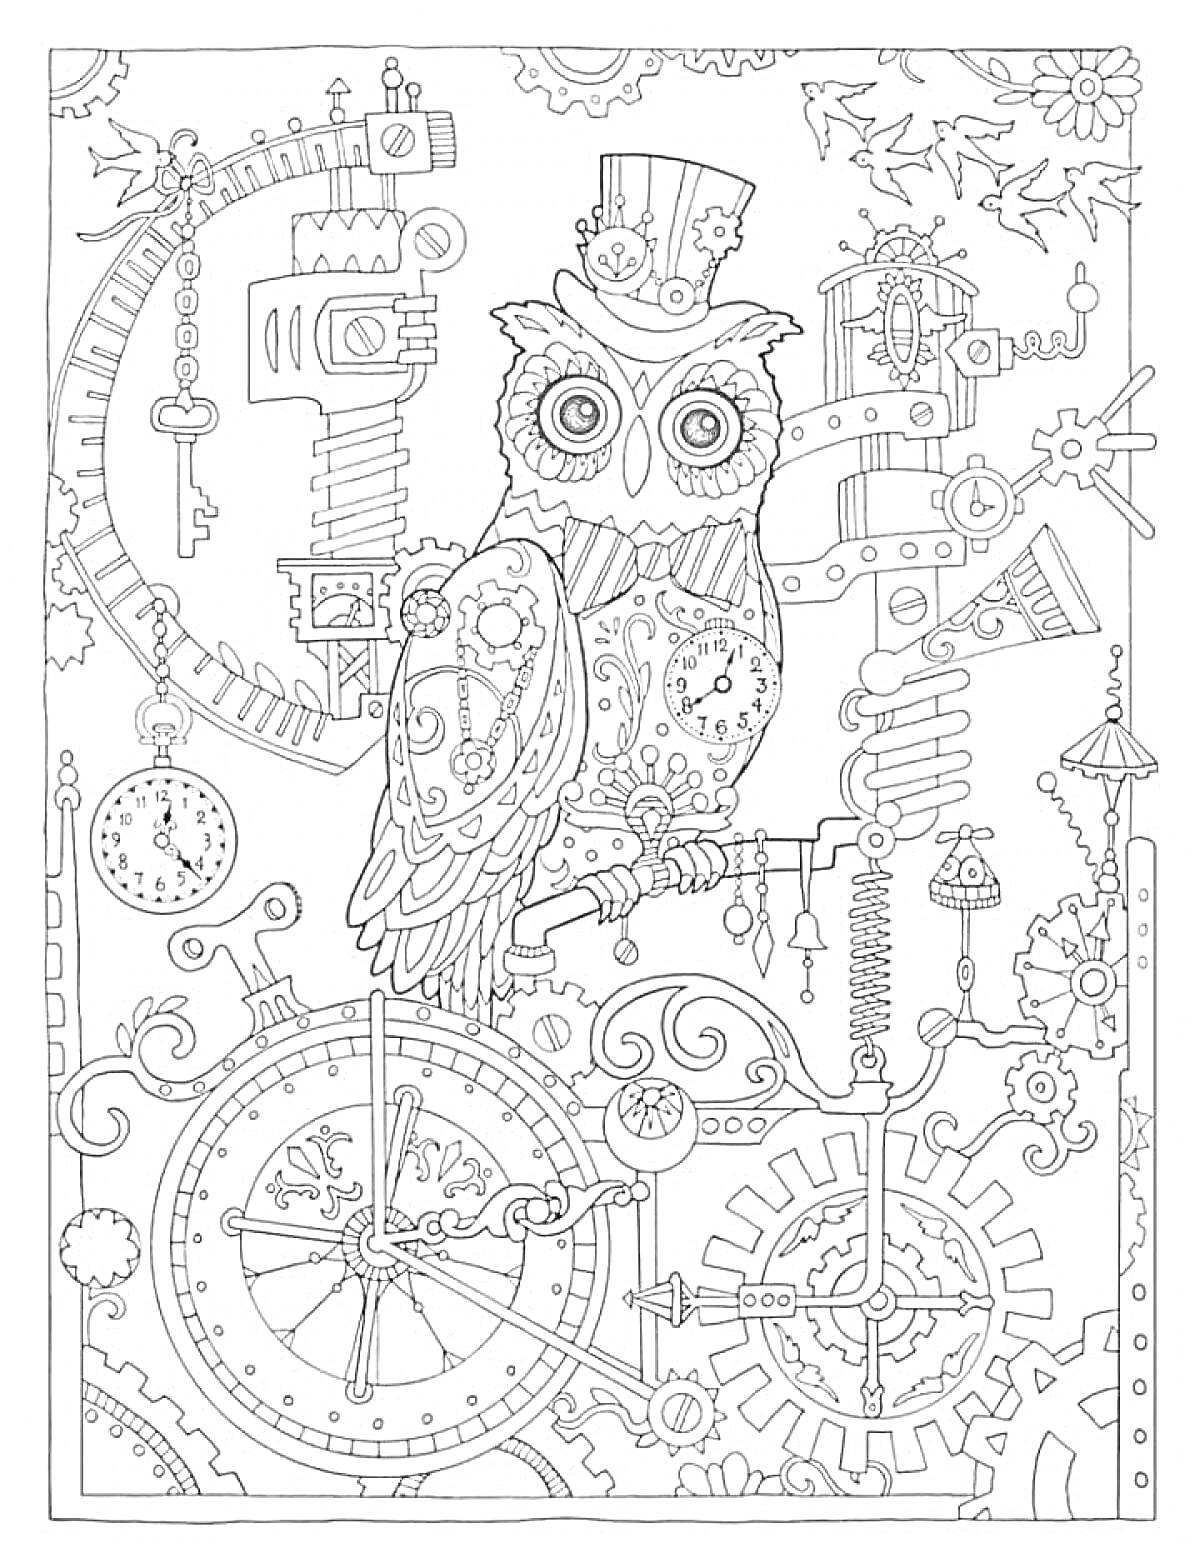 Раскраска Антистресс раскраска с совой в цилиндре среди шестеренок, часов и механизмов